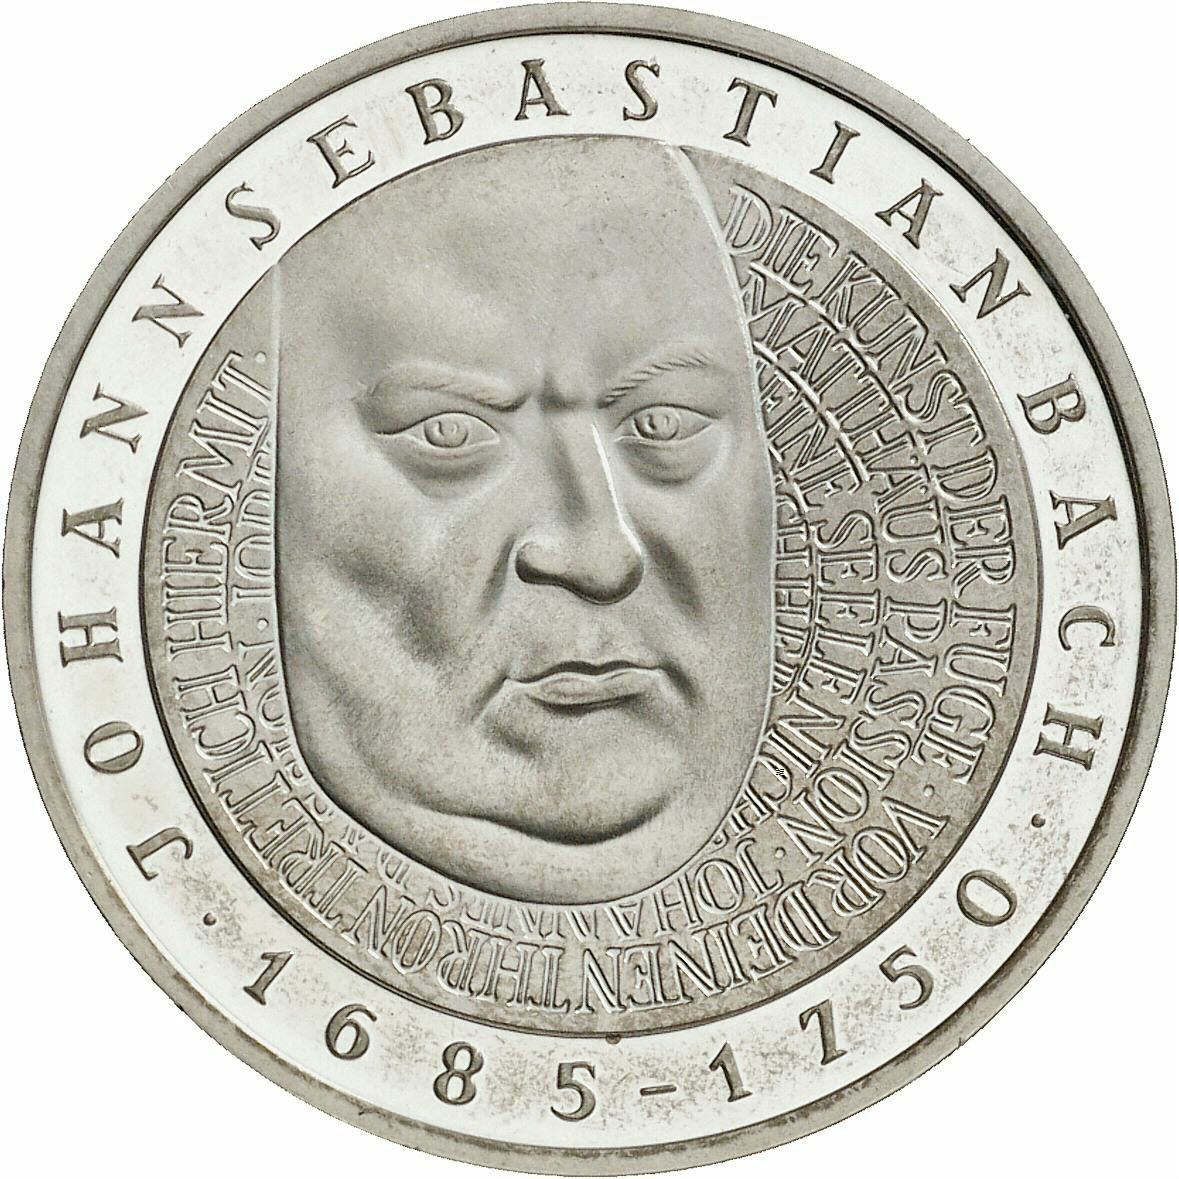 DE 10 Deutsche Mark 2000 D